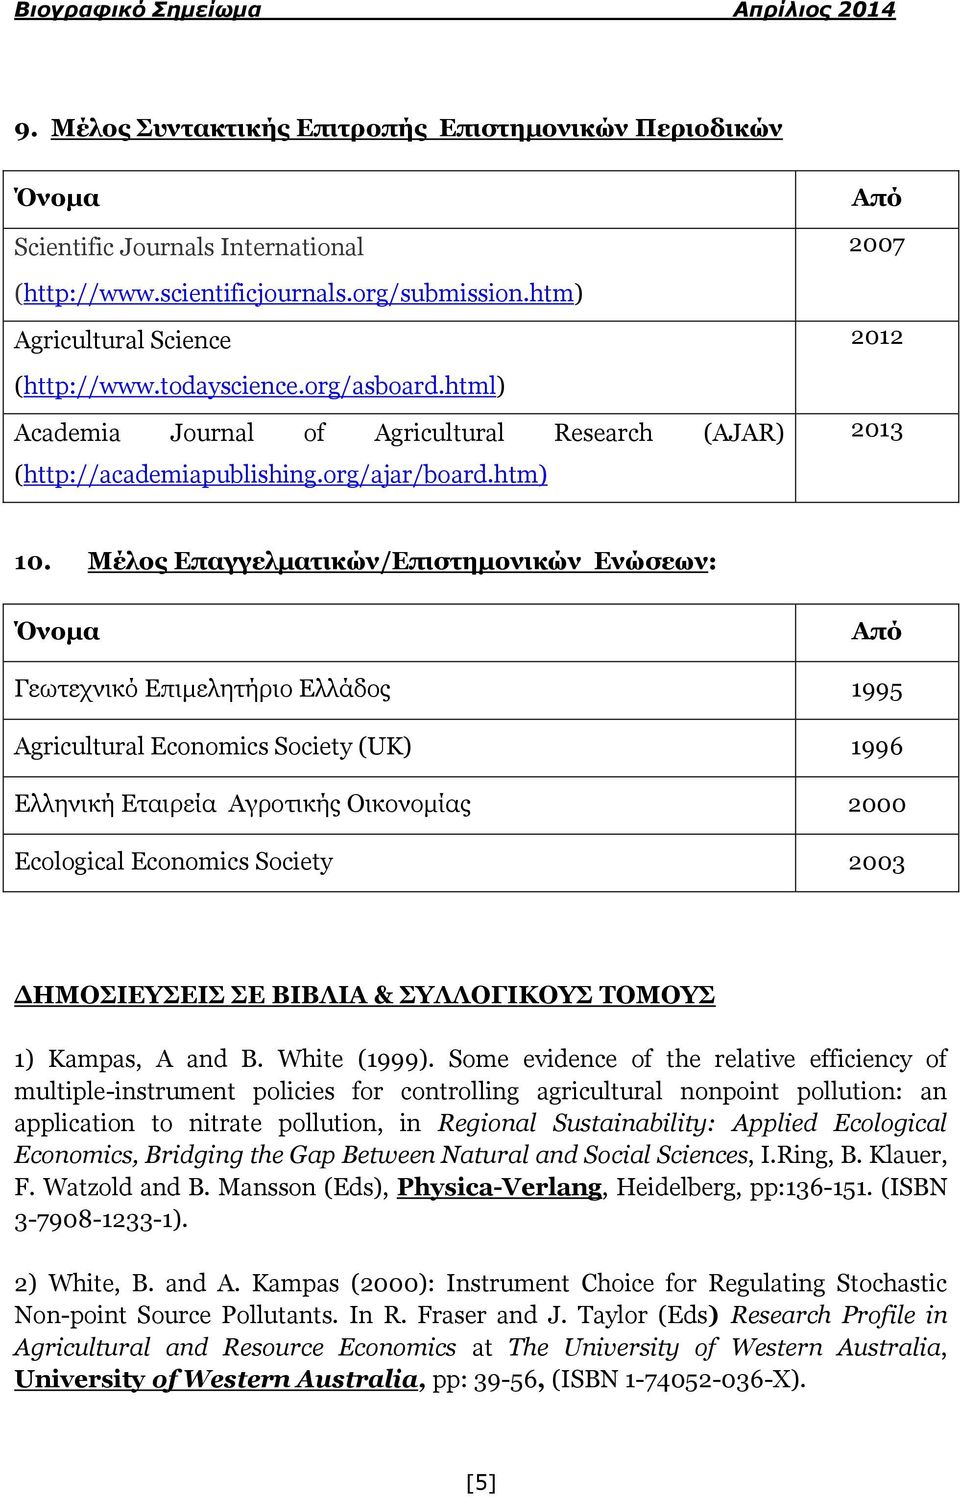 Μέλος Δπαγγελμαηικών/Δπιζηημονικών Δνώζεων: Όνομα Από Γεσηερληθό Δπηκειεηήξην Διιάδνο 1995 Agricultural Economics Society (UK) 1996 Διιεληθή Δηαηξεία Αγξνηηθήο Οηθνλνκίαο 2000 Ecological Economics